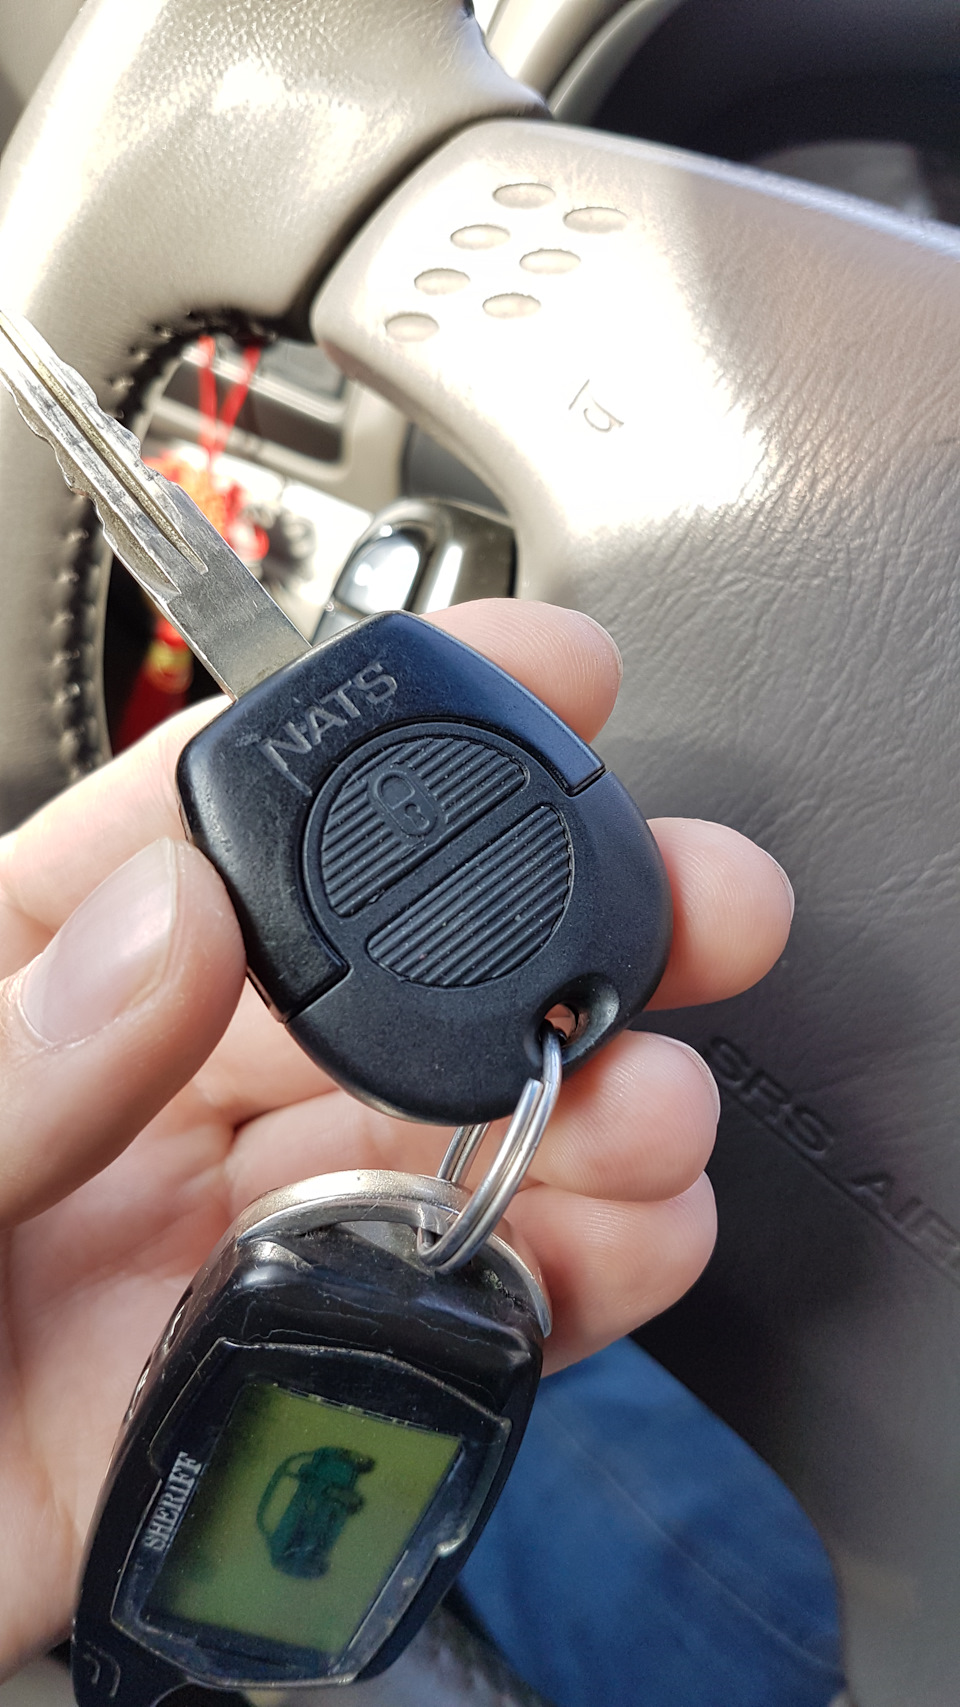 Сигнализация на машину на телефон. Hyundai Bayon ключ сигнализация. Ключ для Ниссан Санни с кнопками. Ключи от сигнализации Додж 2002. Ключи сигнализации от машины Ниссан.